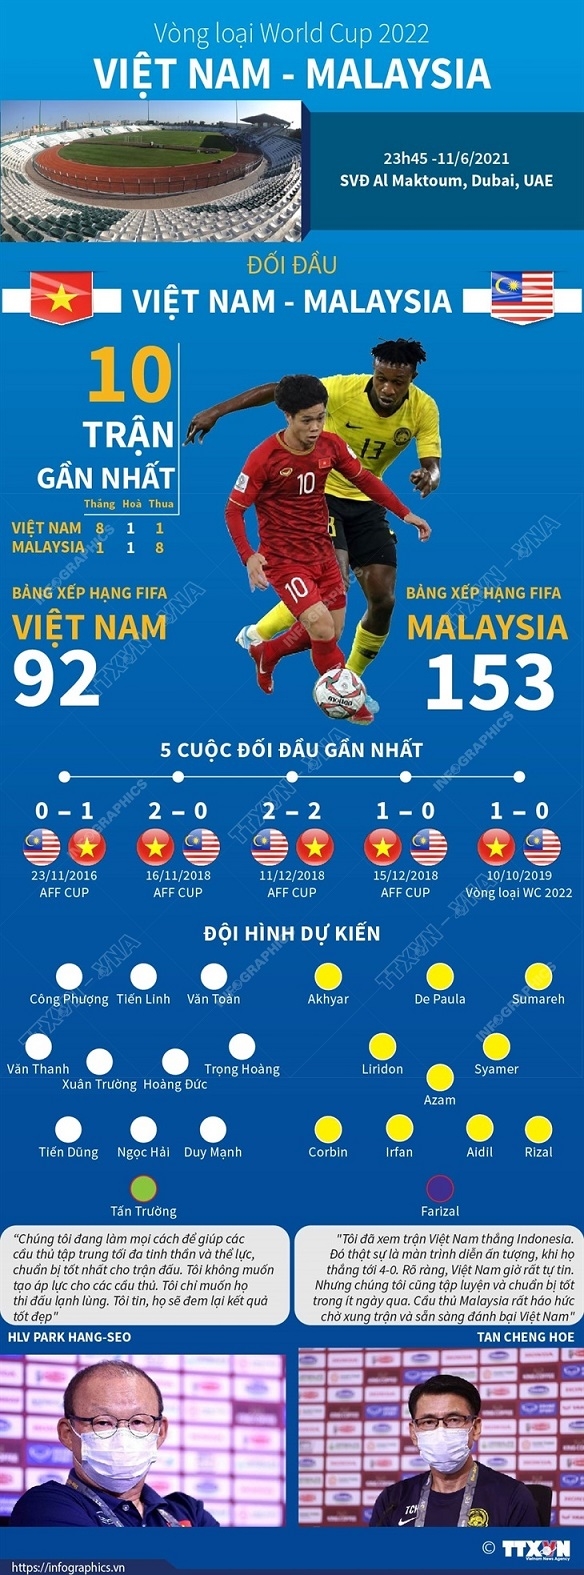 Từ A-Z thông tin trước trận so găng giữa Việt Nam vs Malaysia